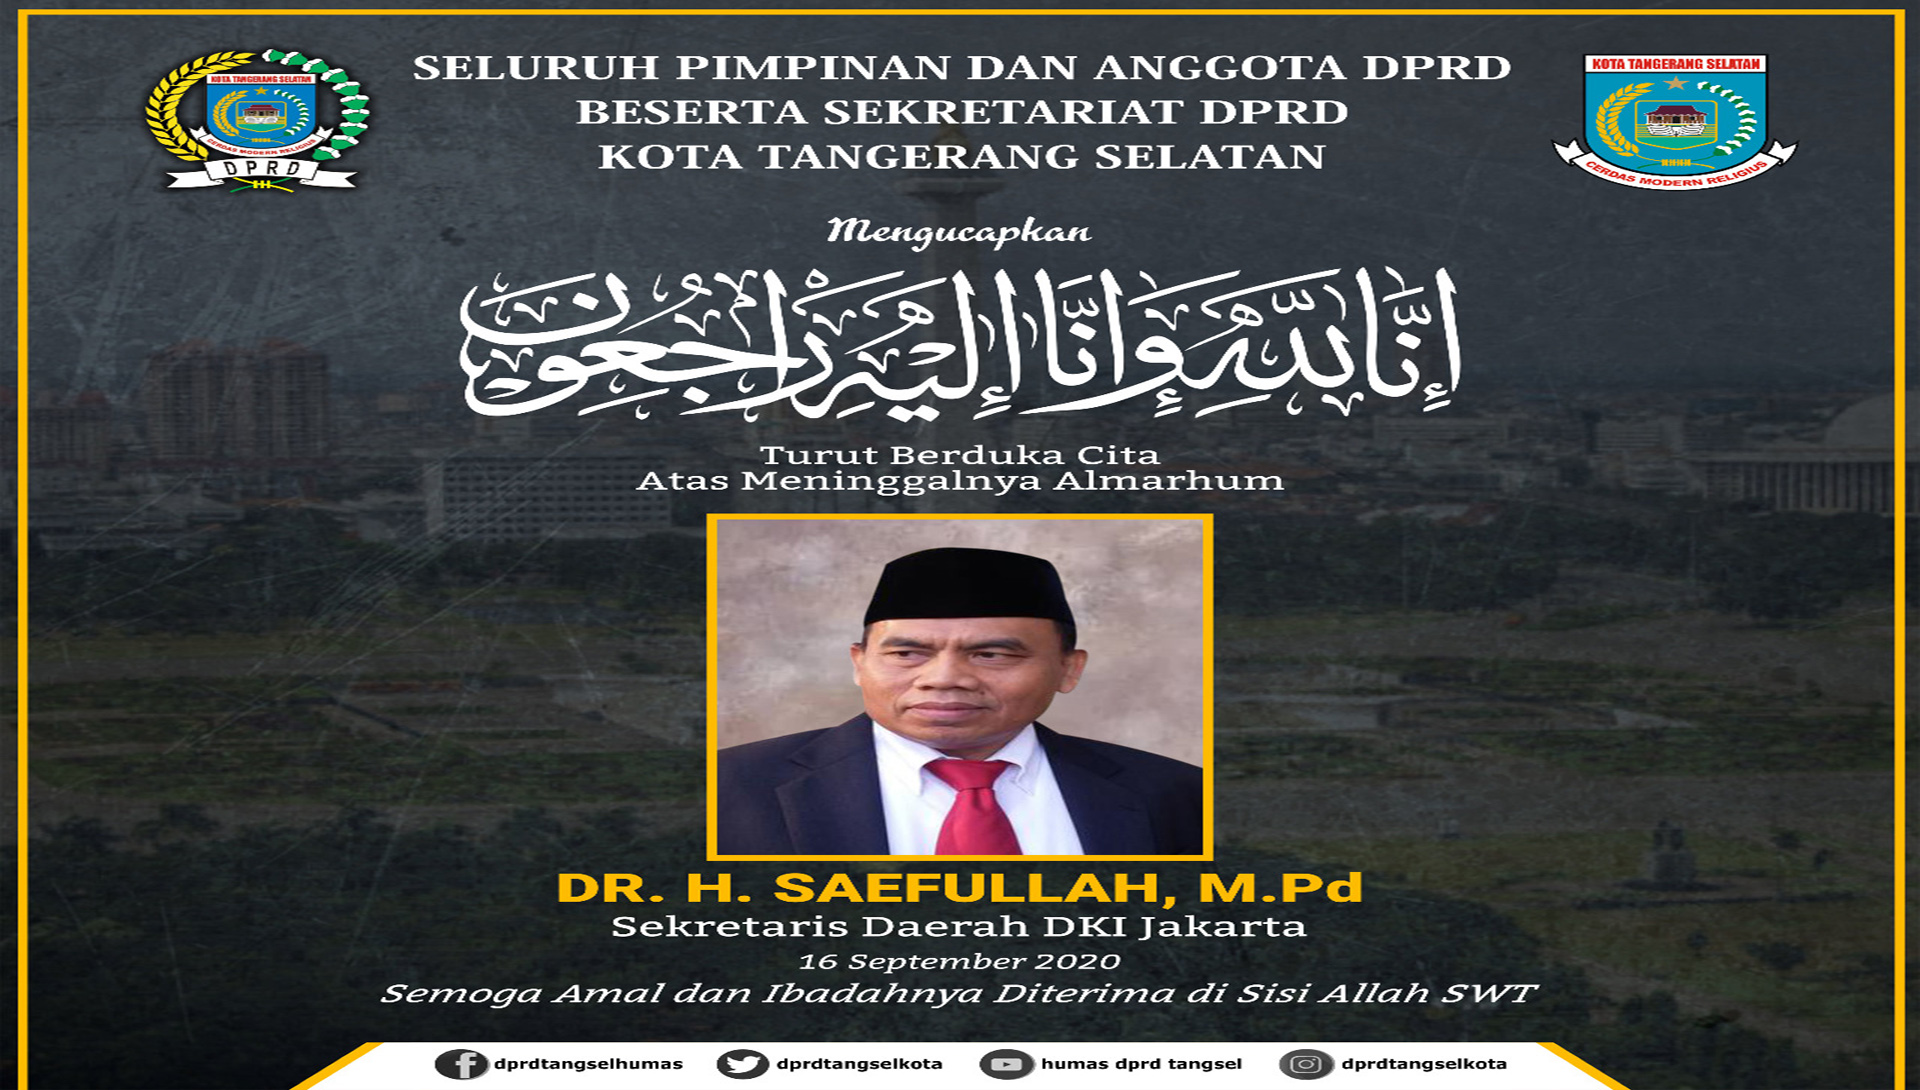 Turut Berduka Cita atas Wafatnya DR. H. Saefullah, M.Pd